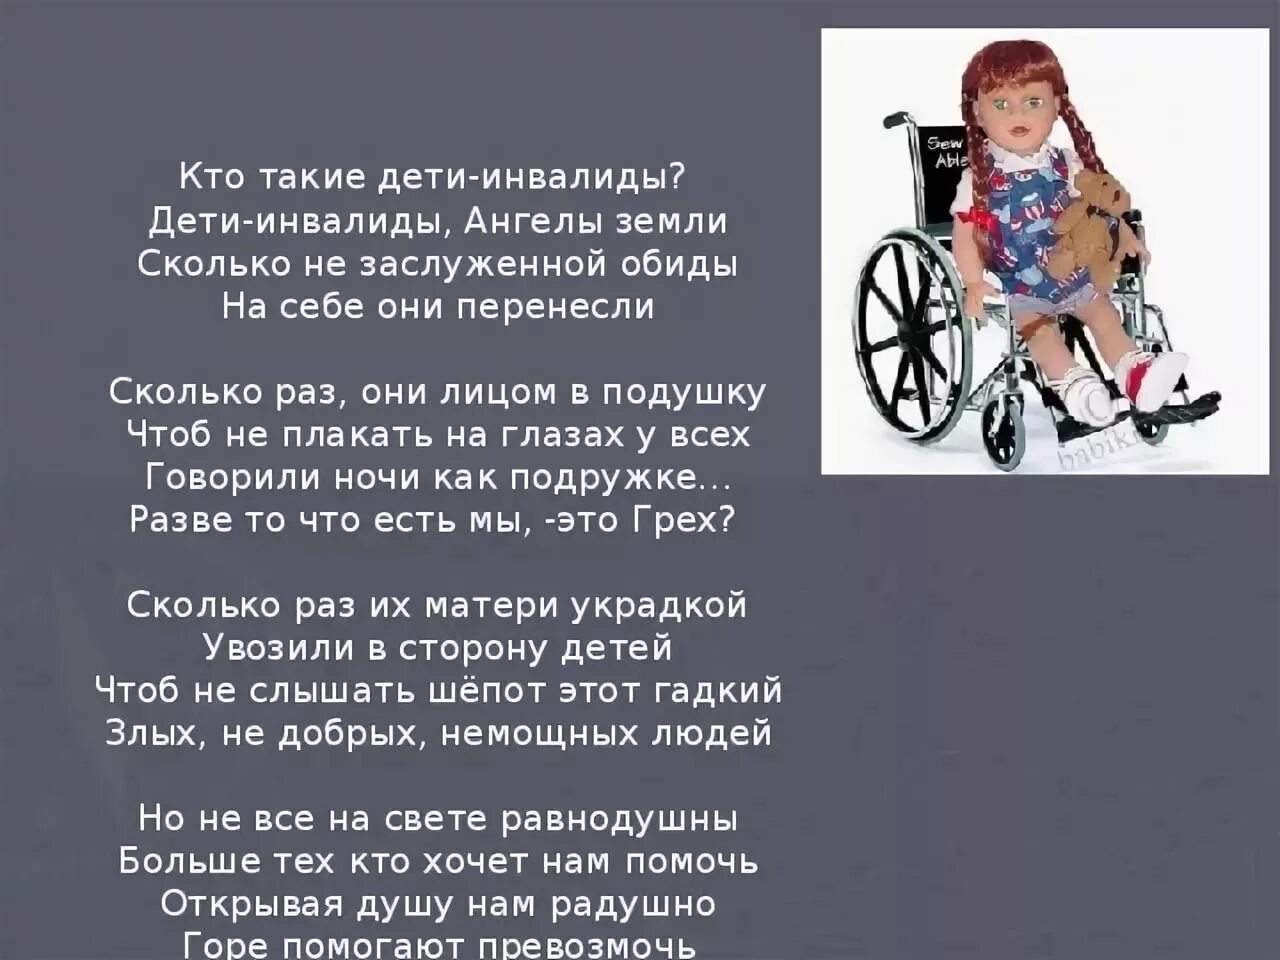 Цитаты про детей инвалидов. Стихи про инвалидов. Цитаты про инвалидов. Высказывание о детях инвалидах. Мама имеющая ребенка инвалида